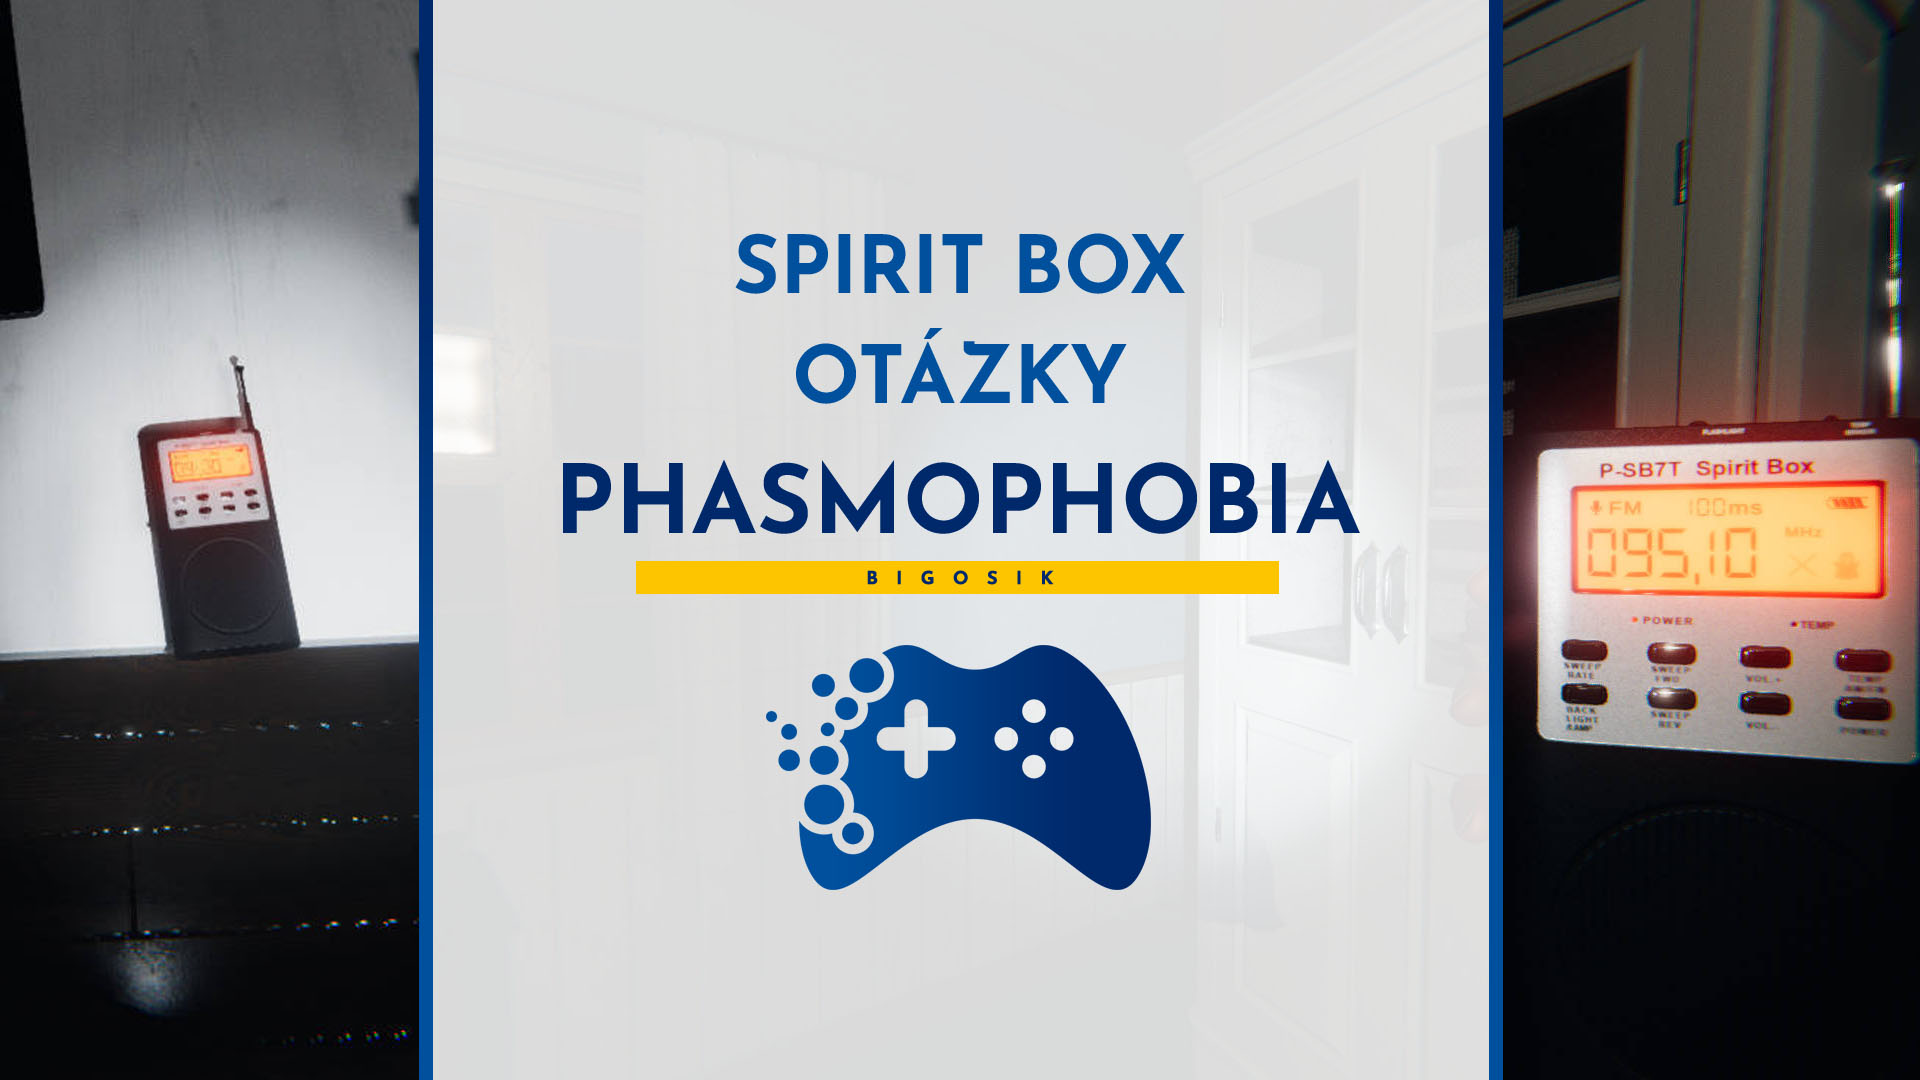 spirit box phasmophobia otázky